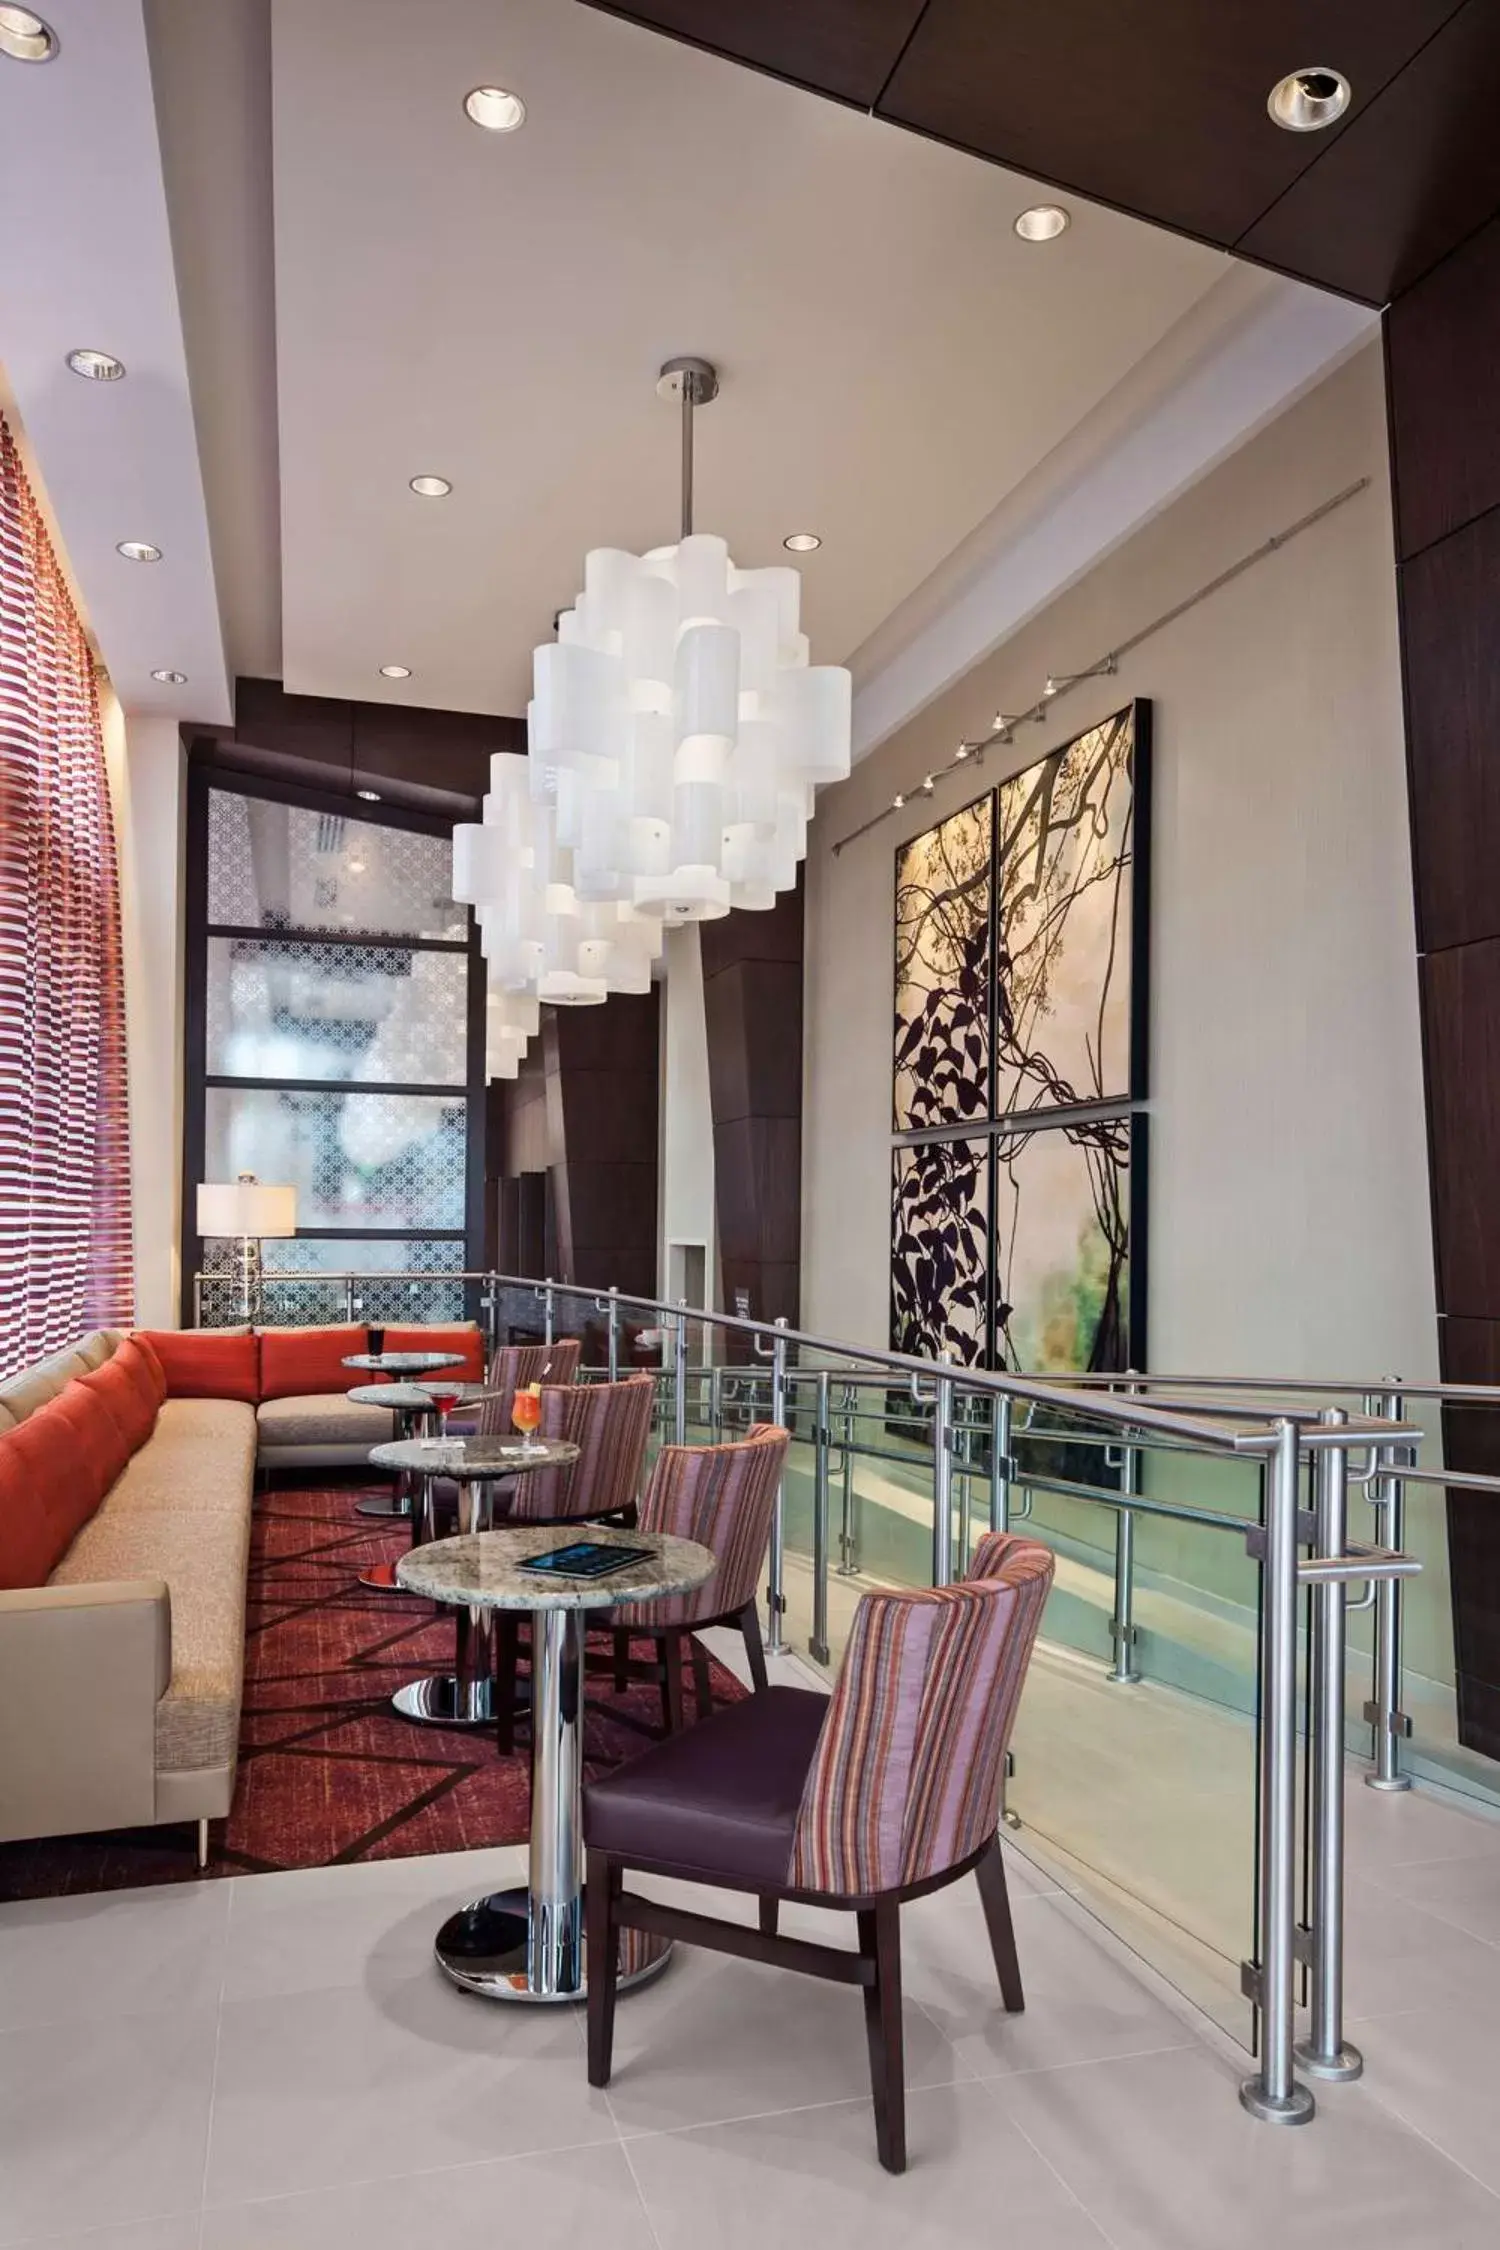 Restaurant/places to eat, Seating Area in Hilton Garden Inn Atlanta Midtown